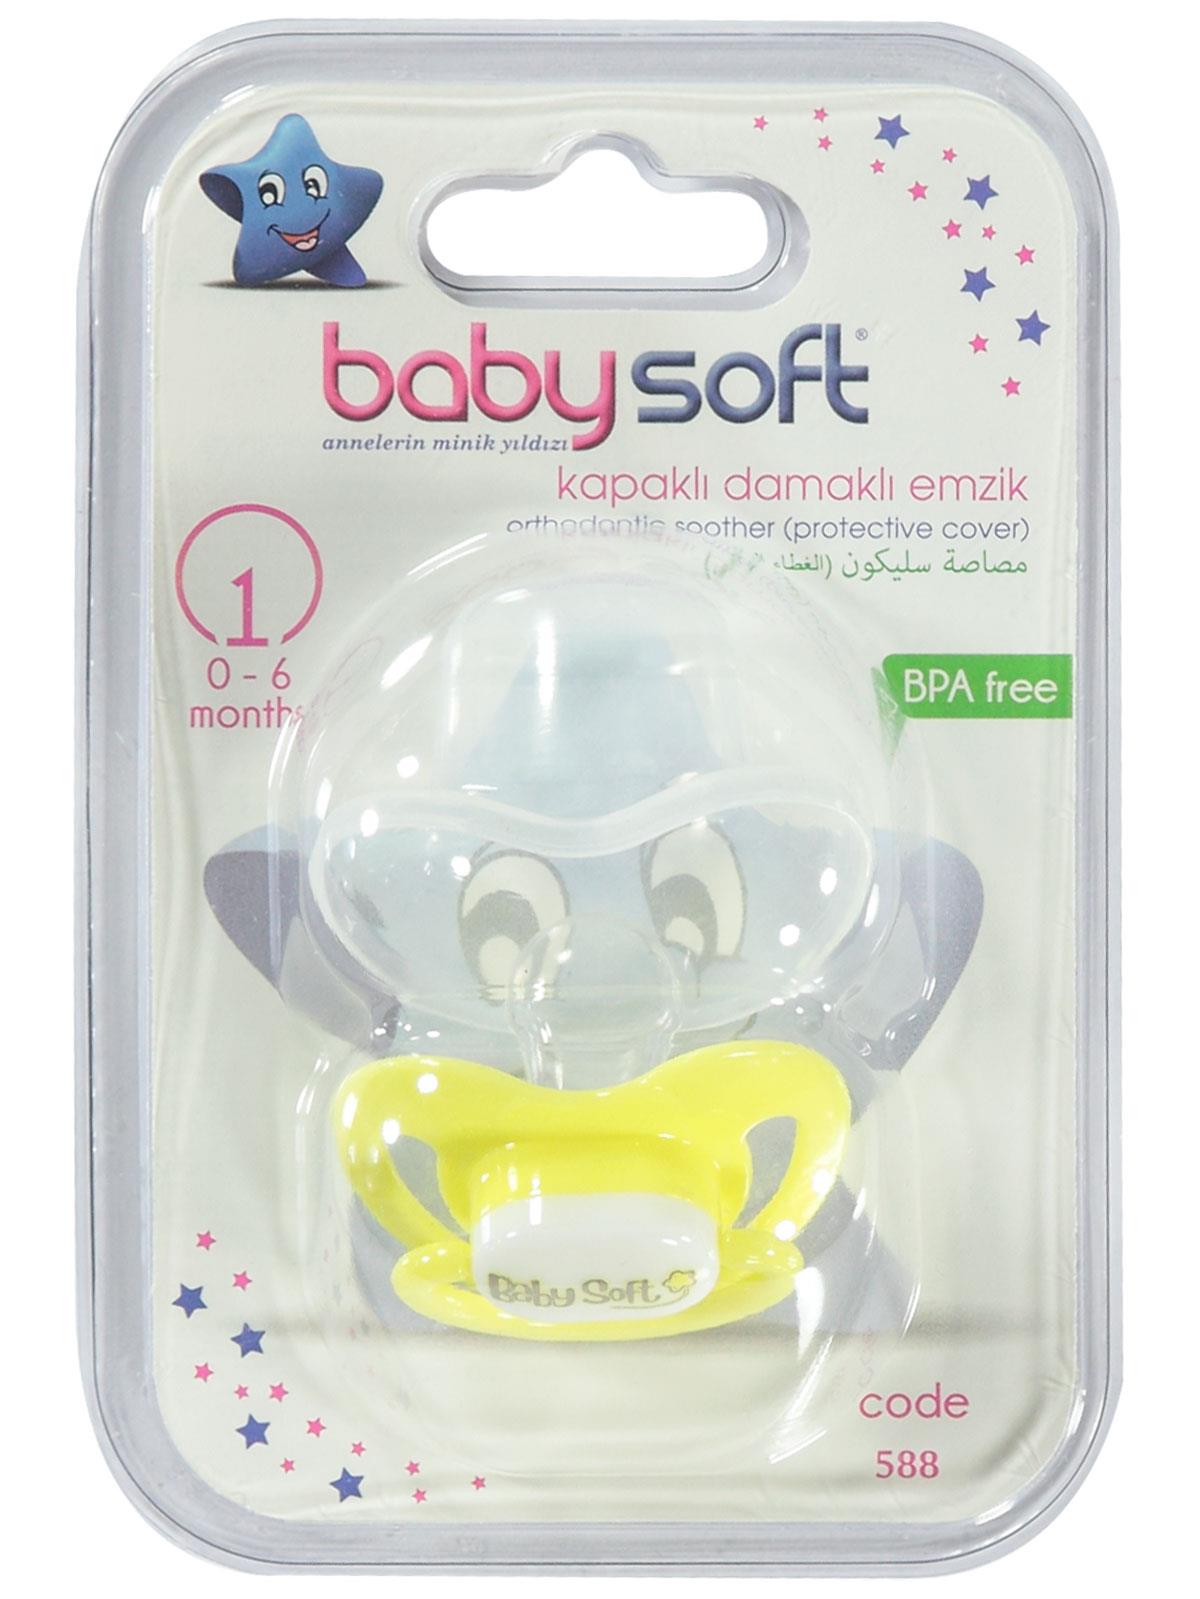 Baby Soft Kapaklı Damaklı Emzik 0-6 Ay Sarı